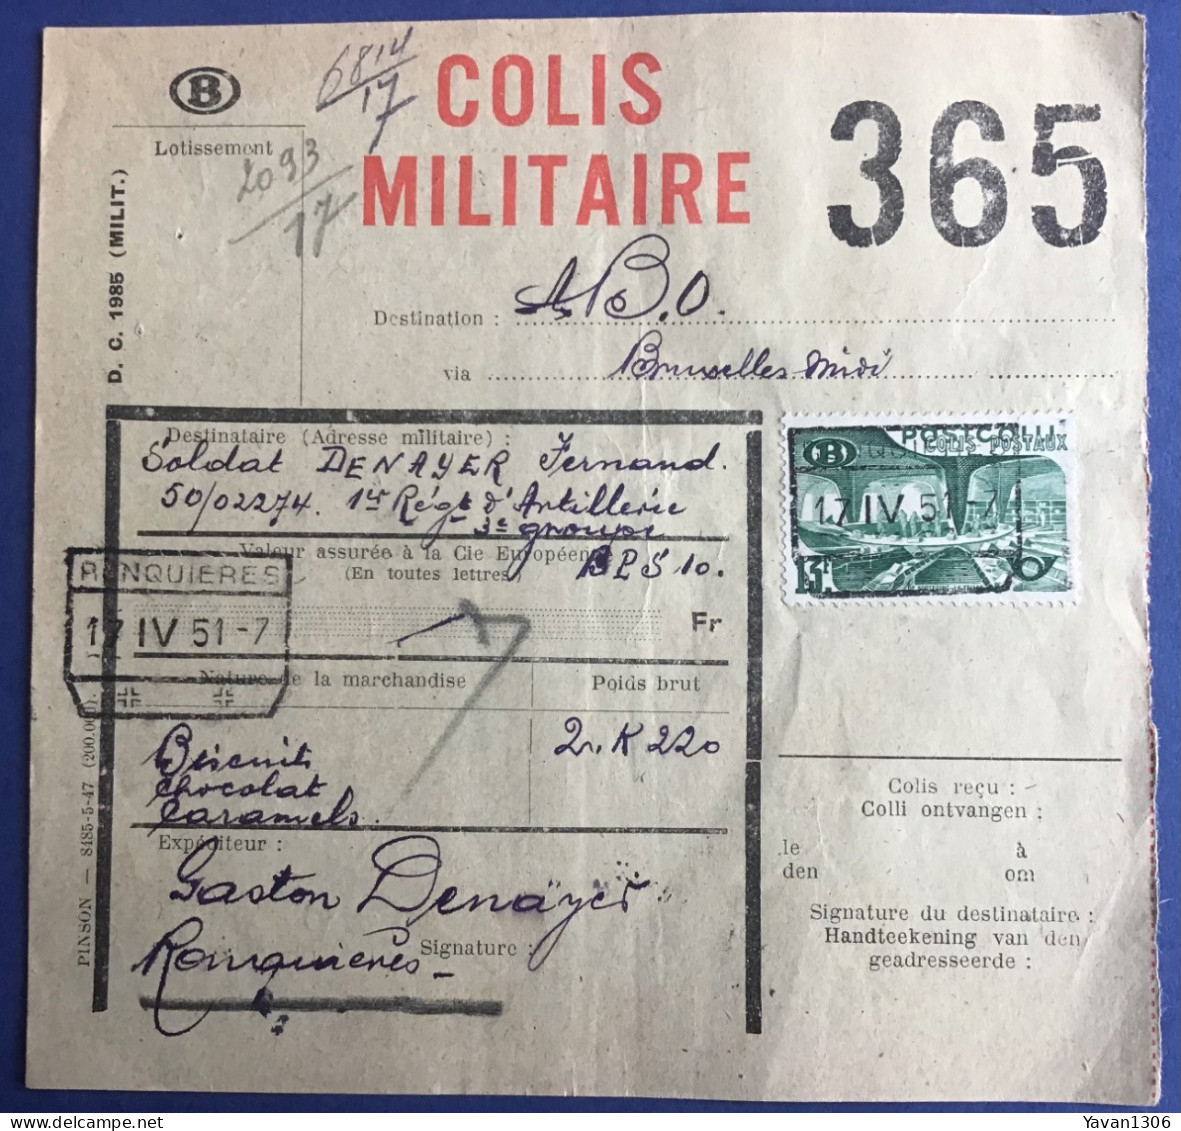 Ronquieres  Expédition  D’un Colis Militaire Vers Le Soldat Denayer Fernand  17 Avril 1951 - Documenten & Fragmenten